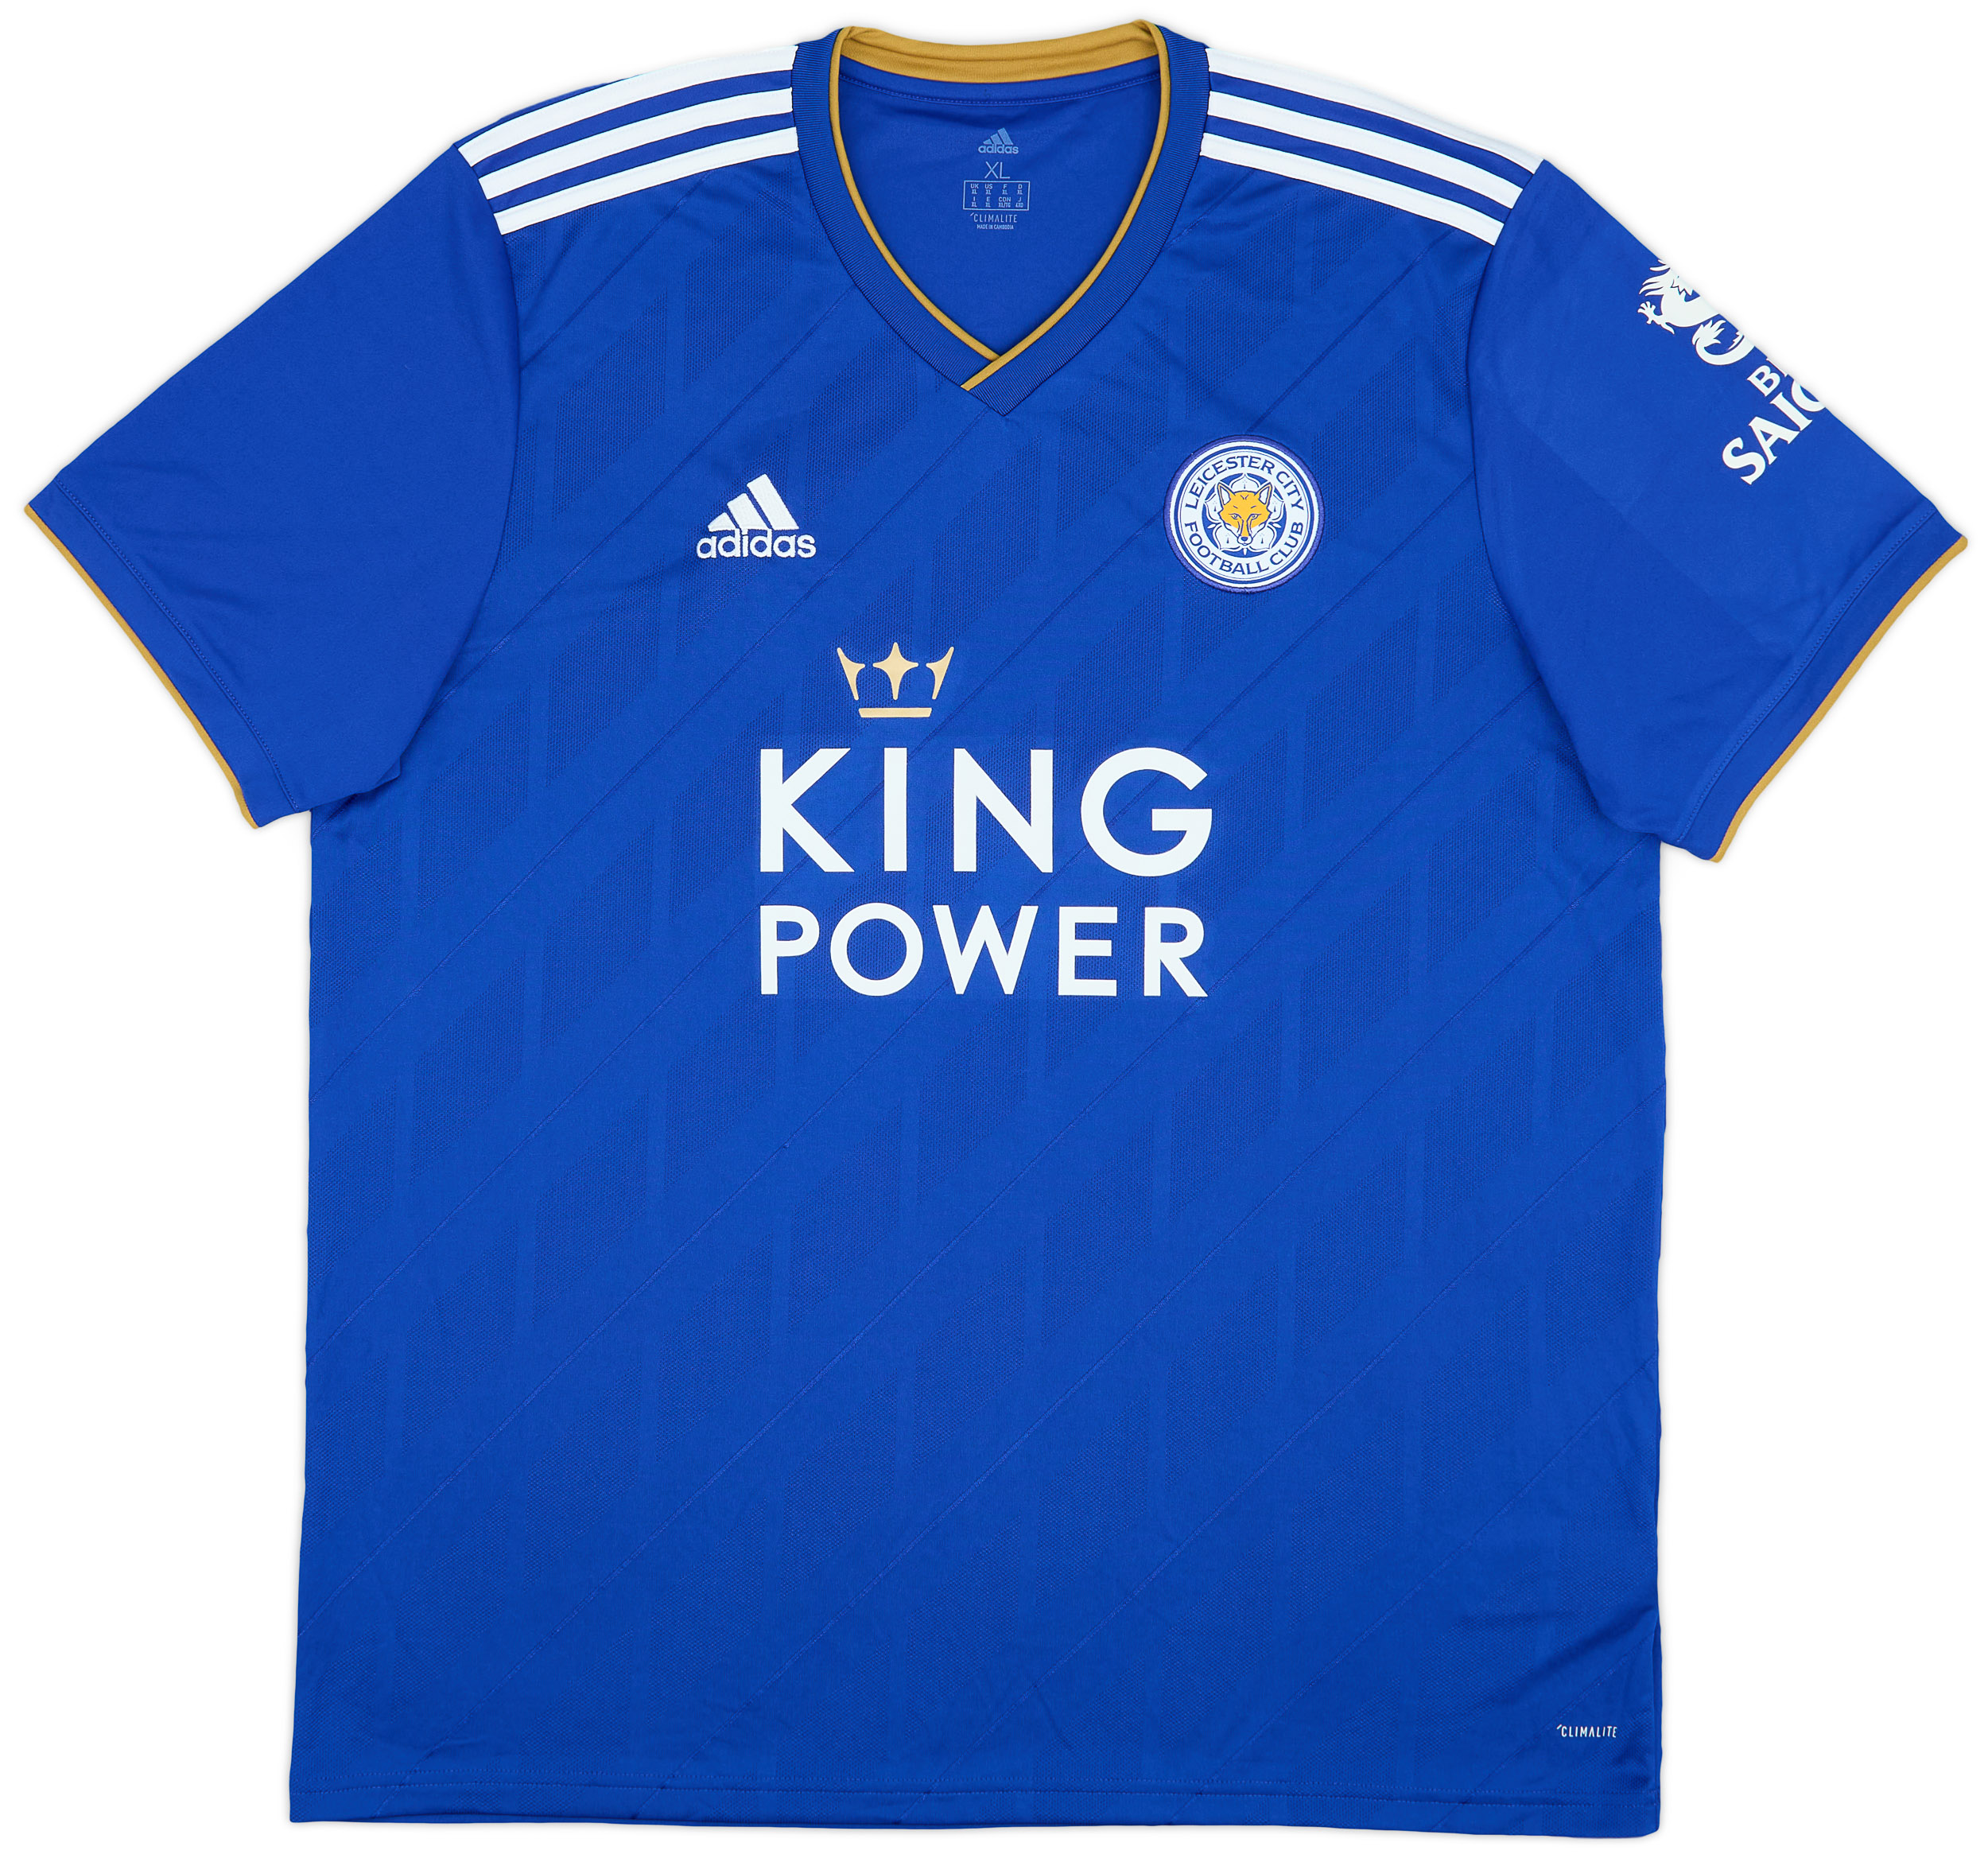 Retro Leicester City Shirt